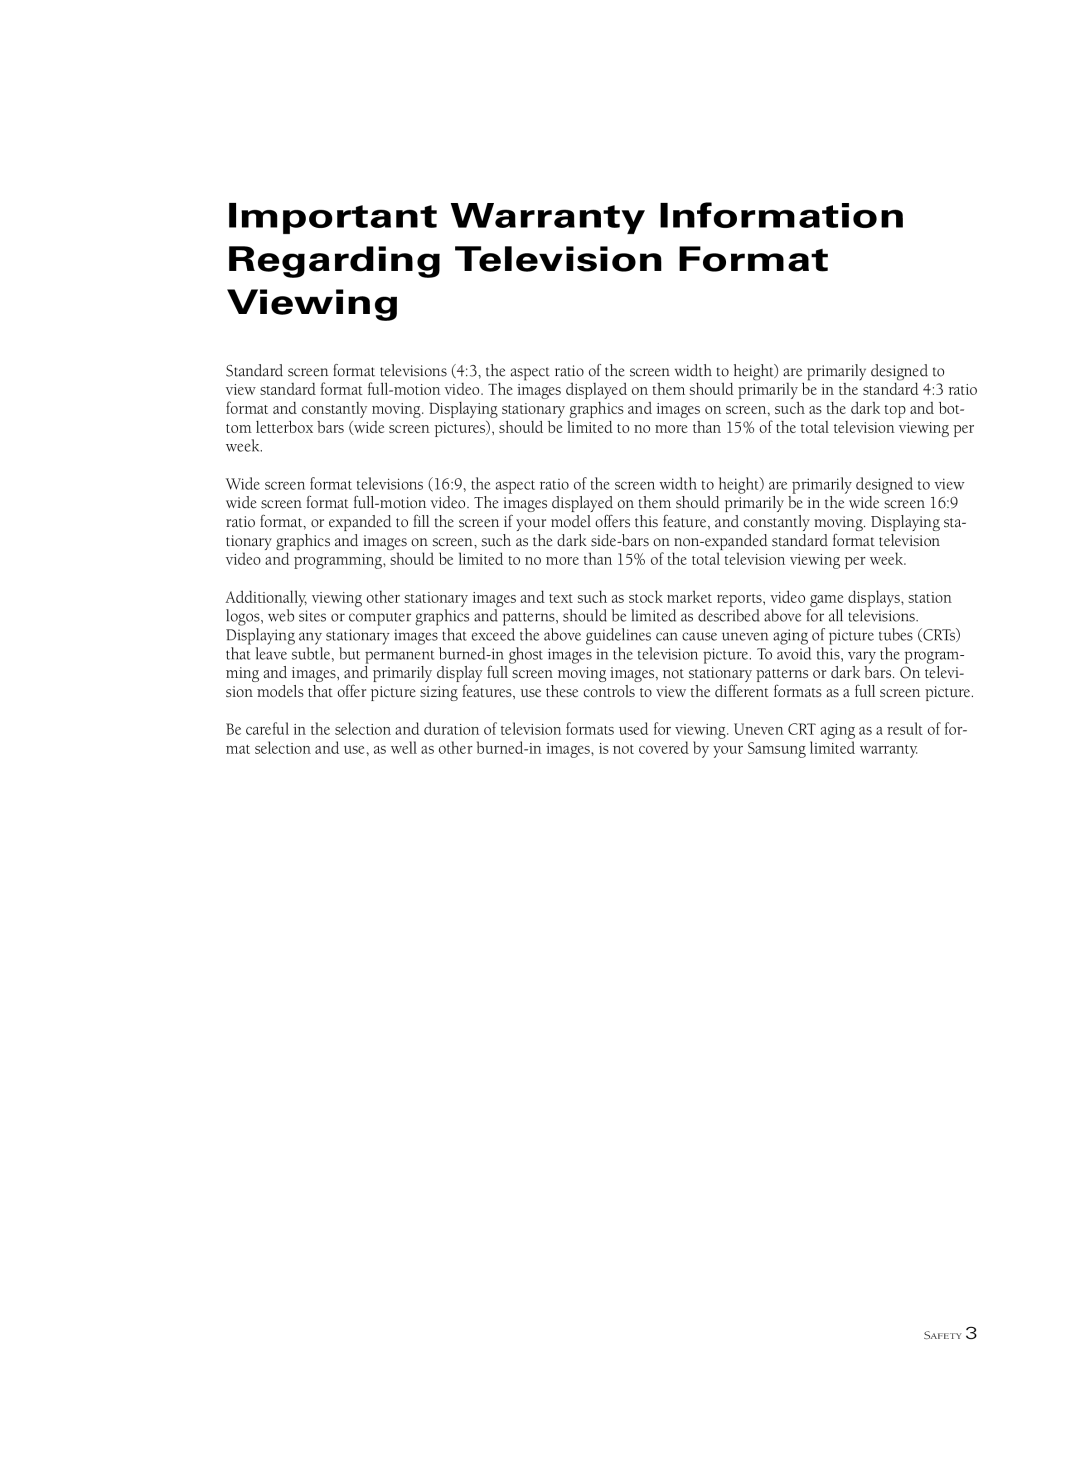 Samsung HCM653W, HCM6525W, HCL 652W, HCL 473W, HCL 552W Important Warranty Information Regarding Television Format Viewing 